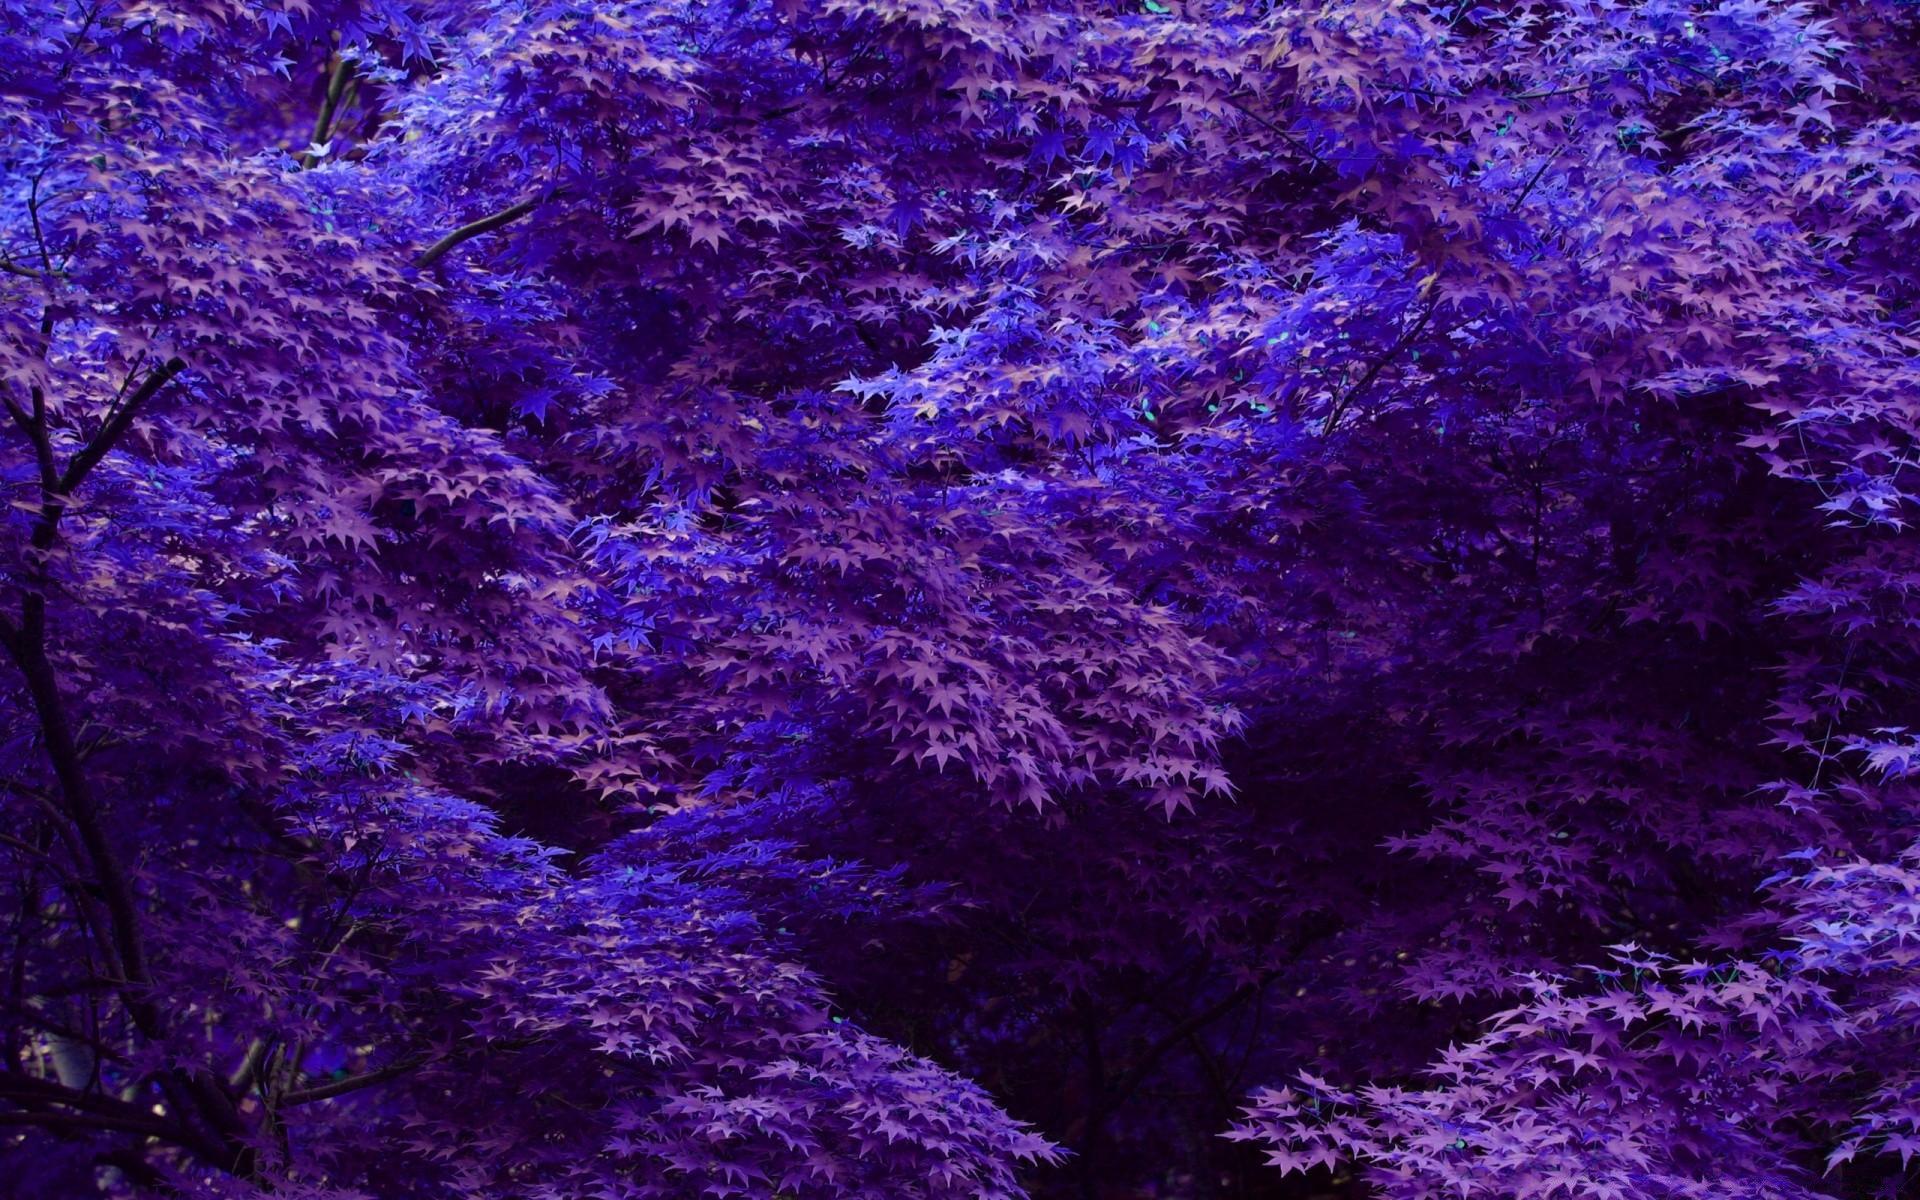 лес аннотация рабочего стола шаблон текстура обои дизайн фон цвет вайолет поверхность природа темный искусство свет впечатление